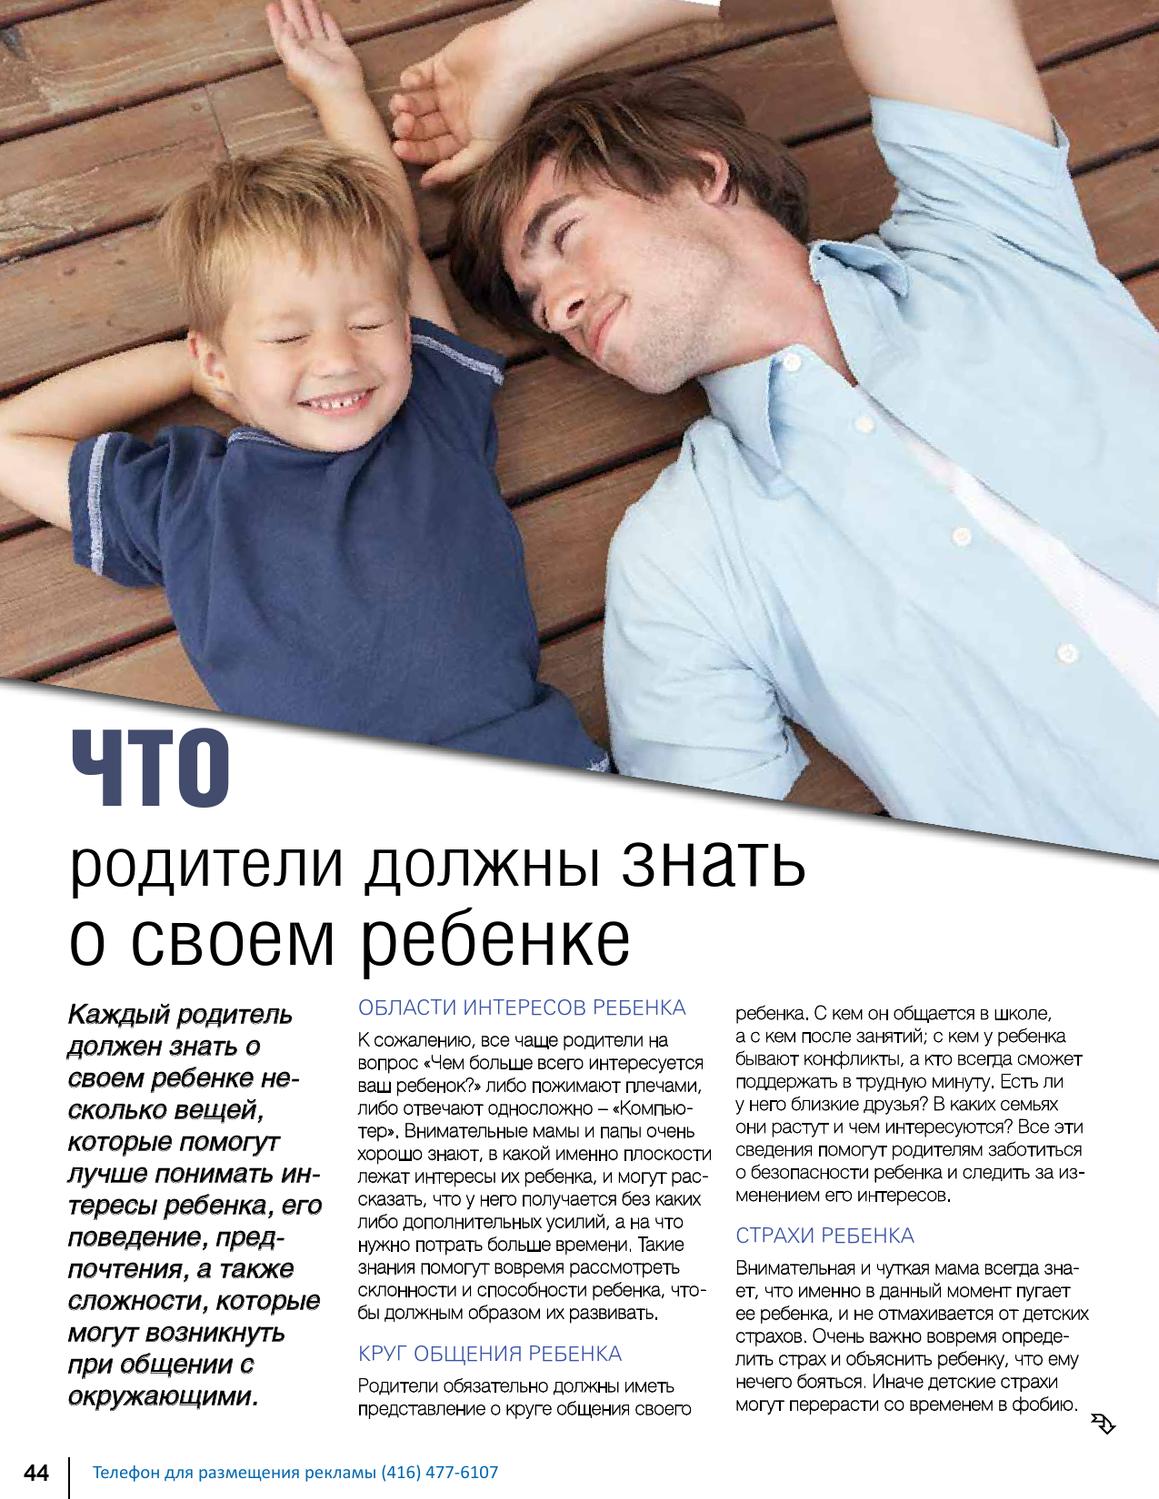 Права и обязанности ребенка до 18 лет. защита несовершеннолетних детей в россии